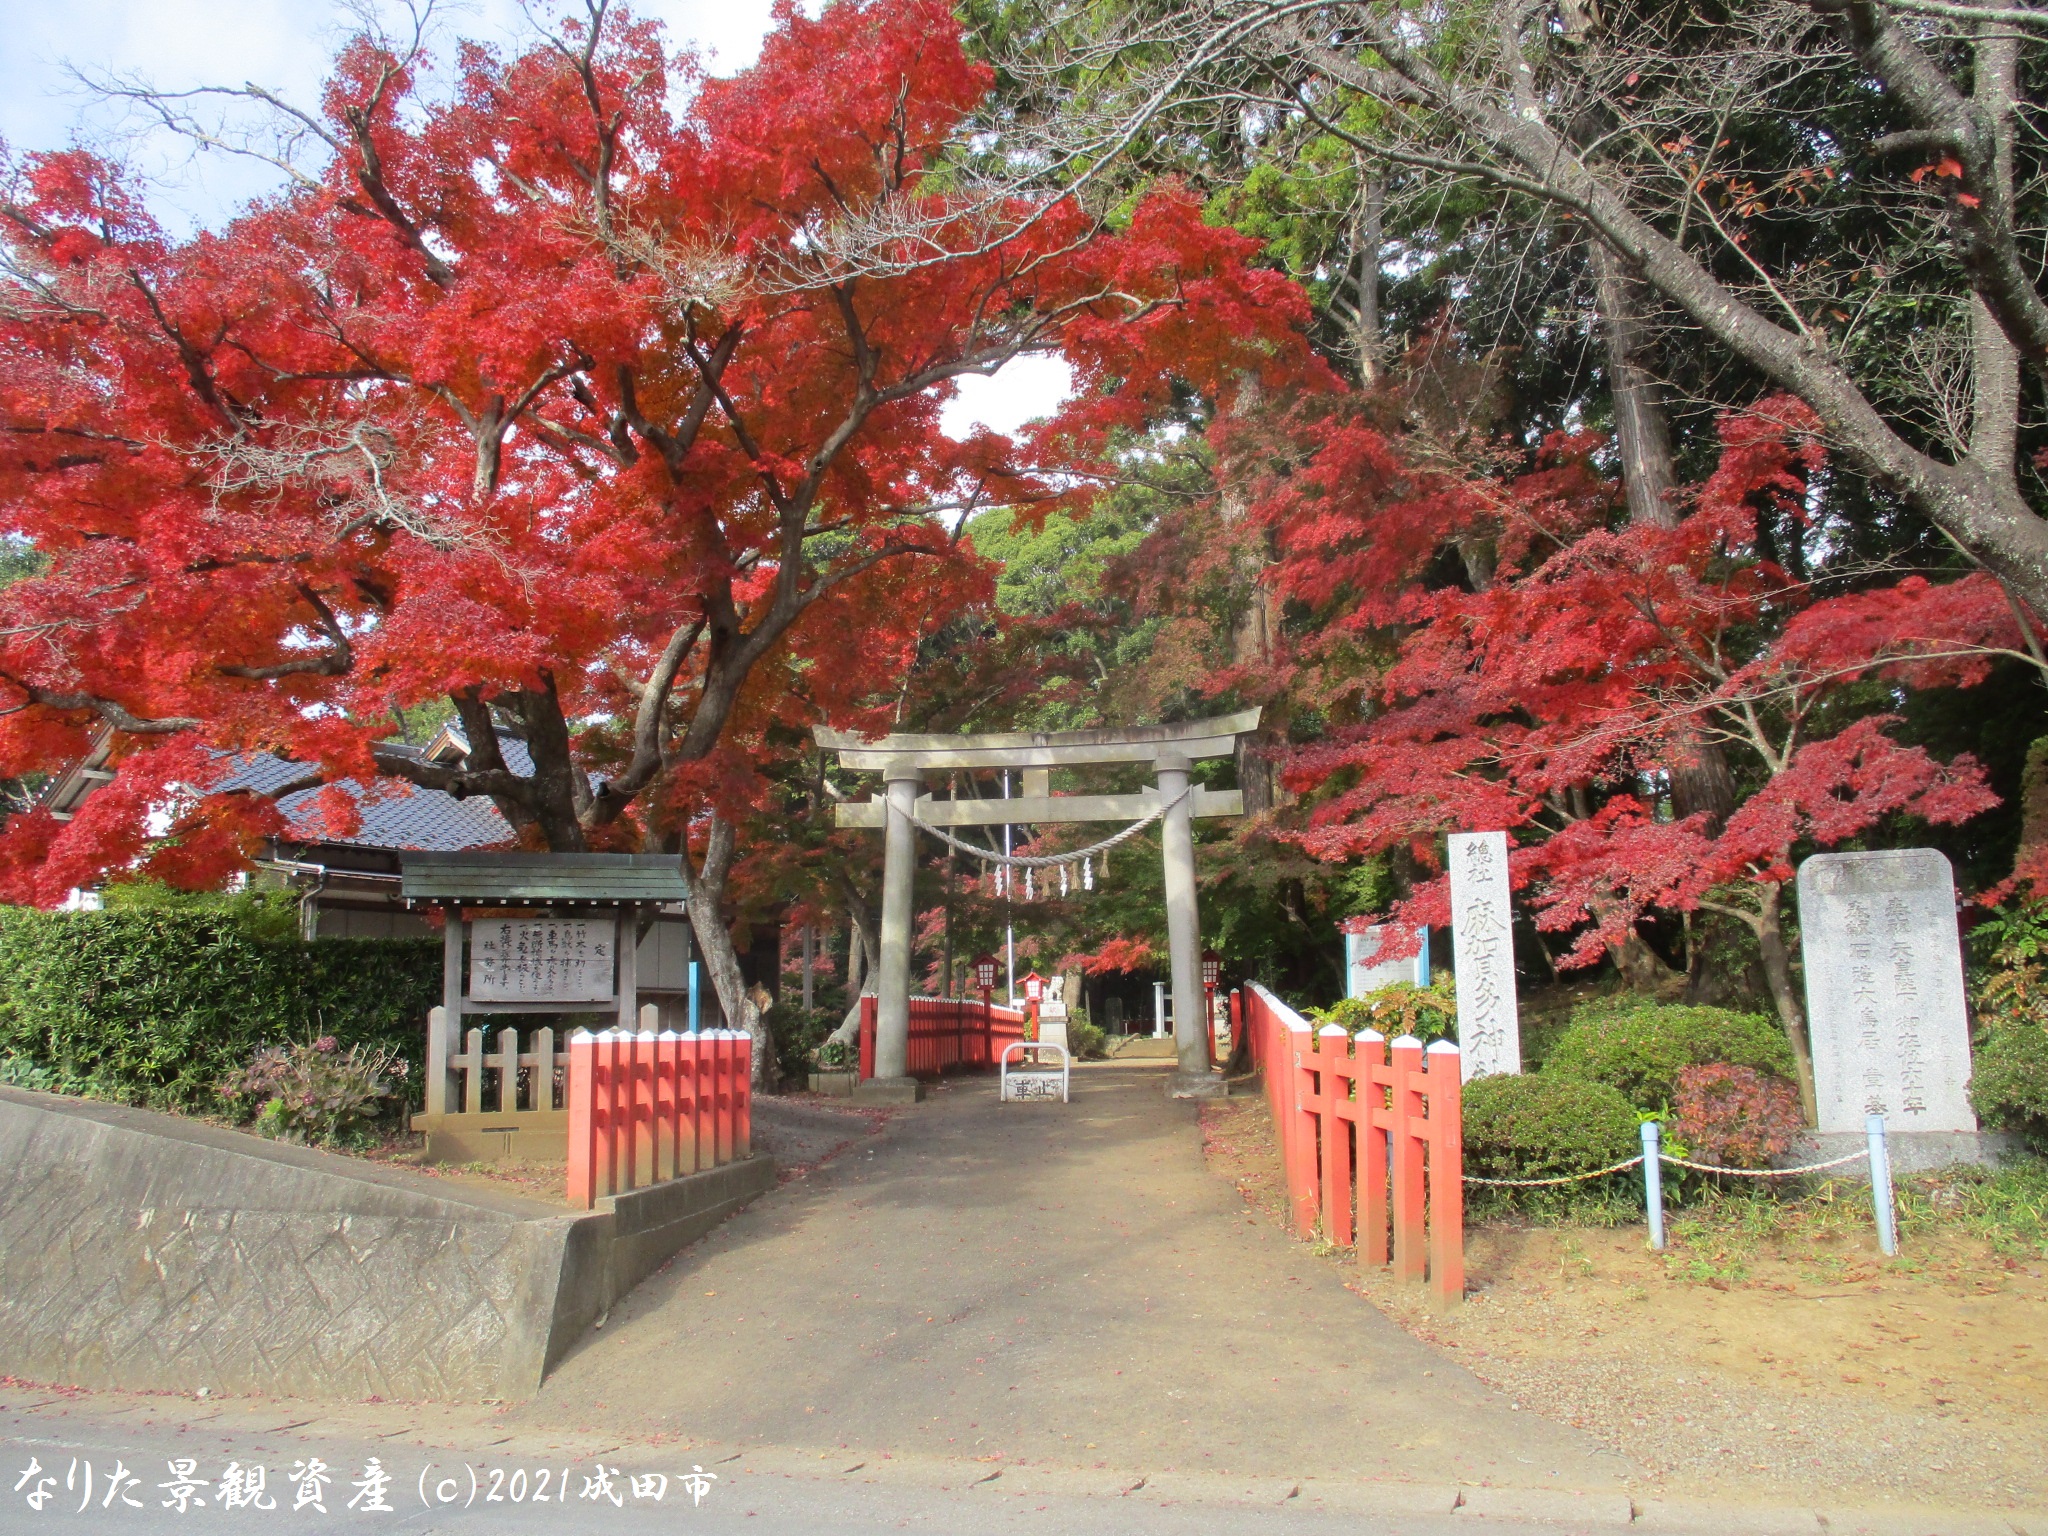 麻賀多神社（奥津宮）と紅葉の景観写真1